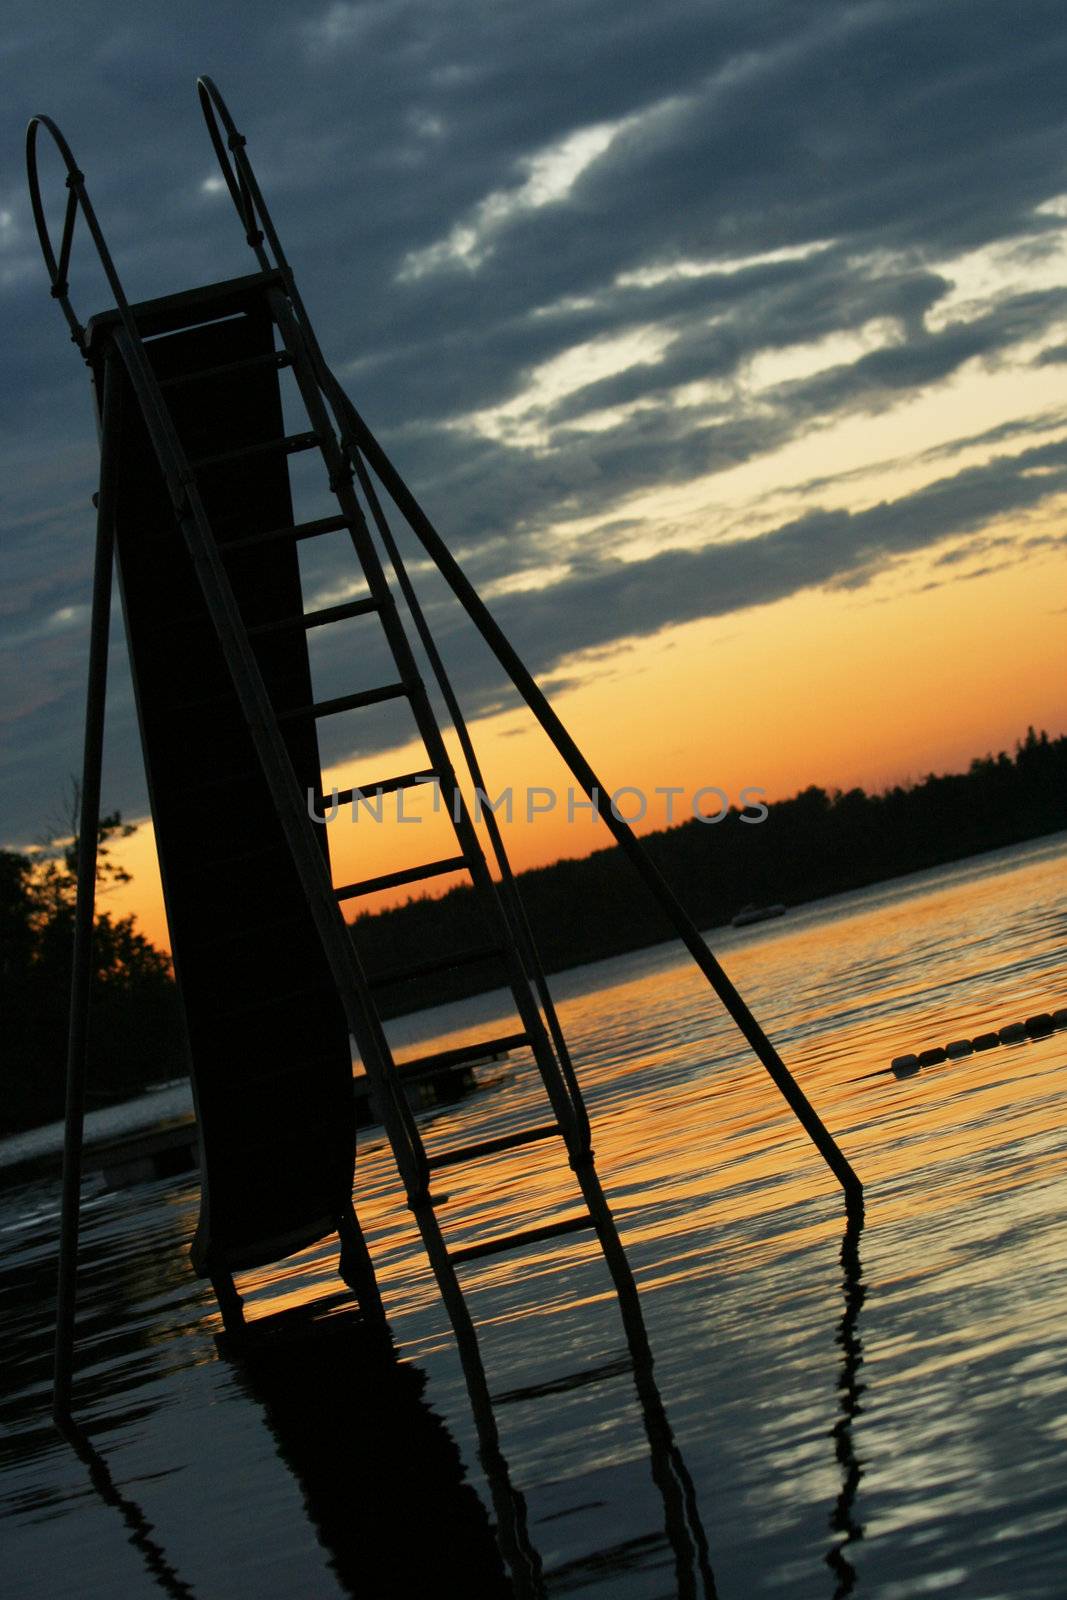 Slide set into lake at sunset by jarenwicklund